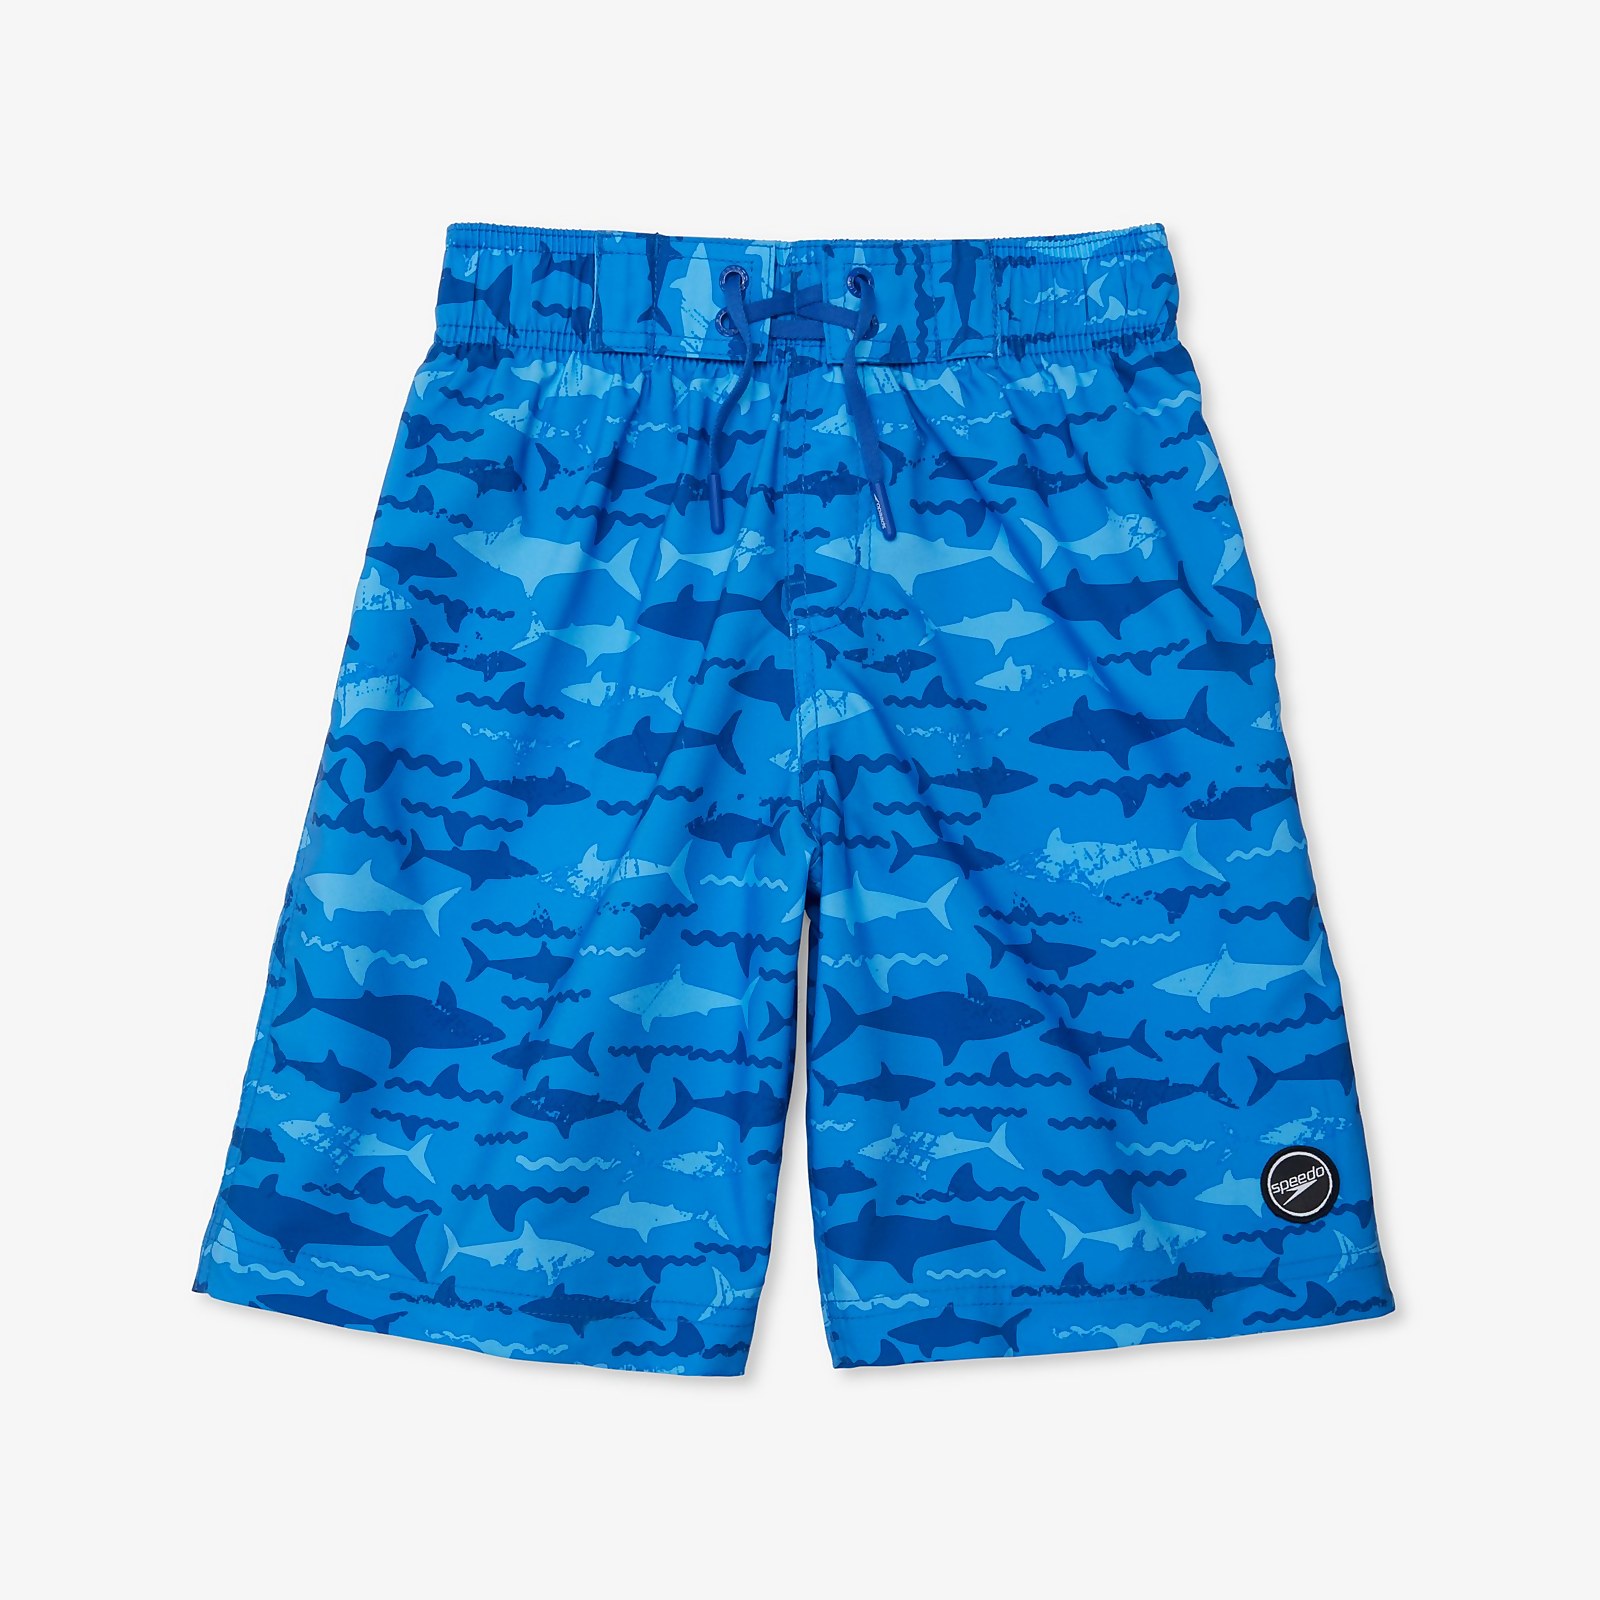 Speedo  Shark Printed Boardshort 17" - L    : Blue